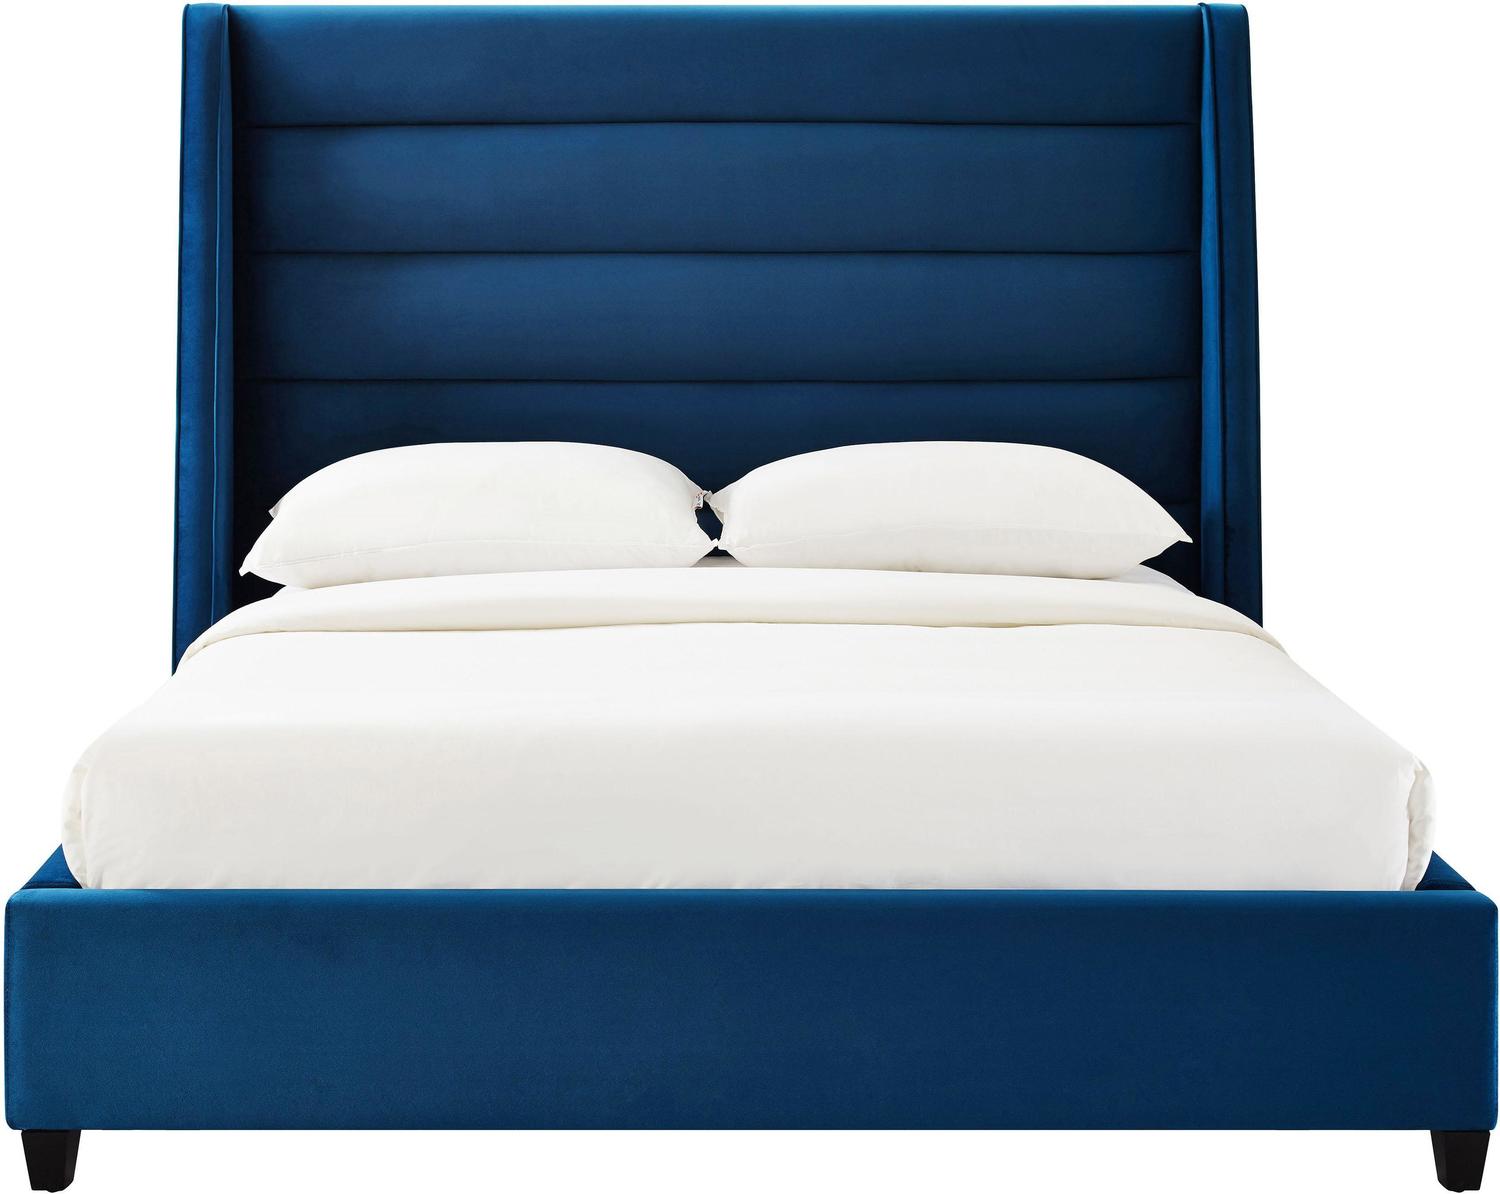 grey velvet bed frame Tov Furniture Beds Beds Navy